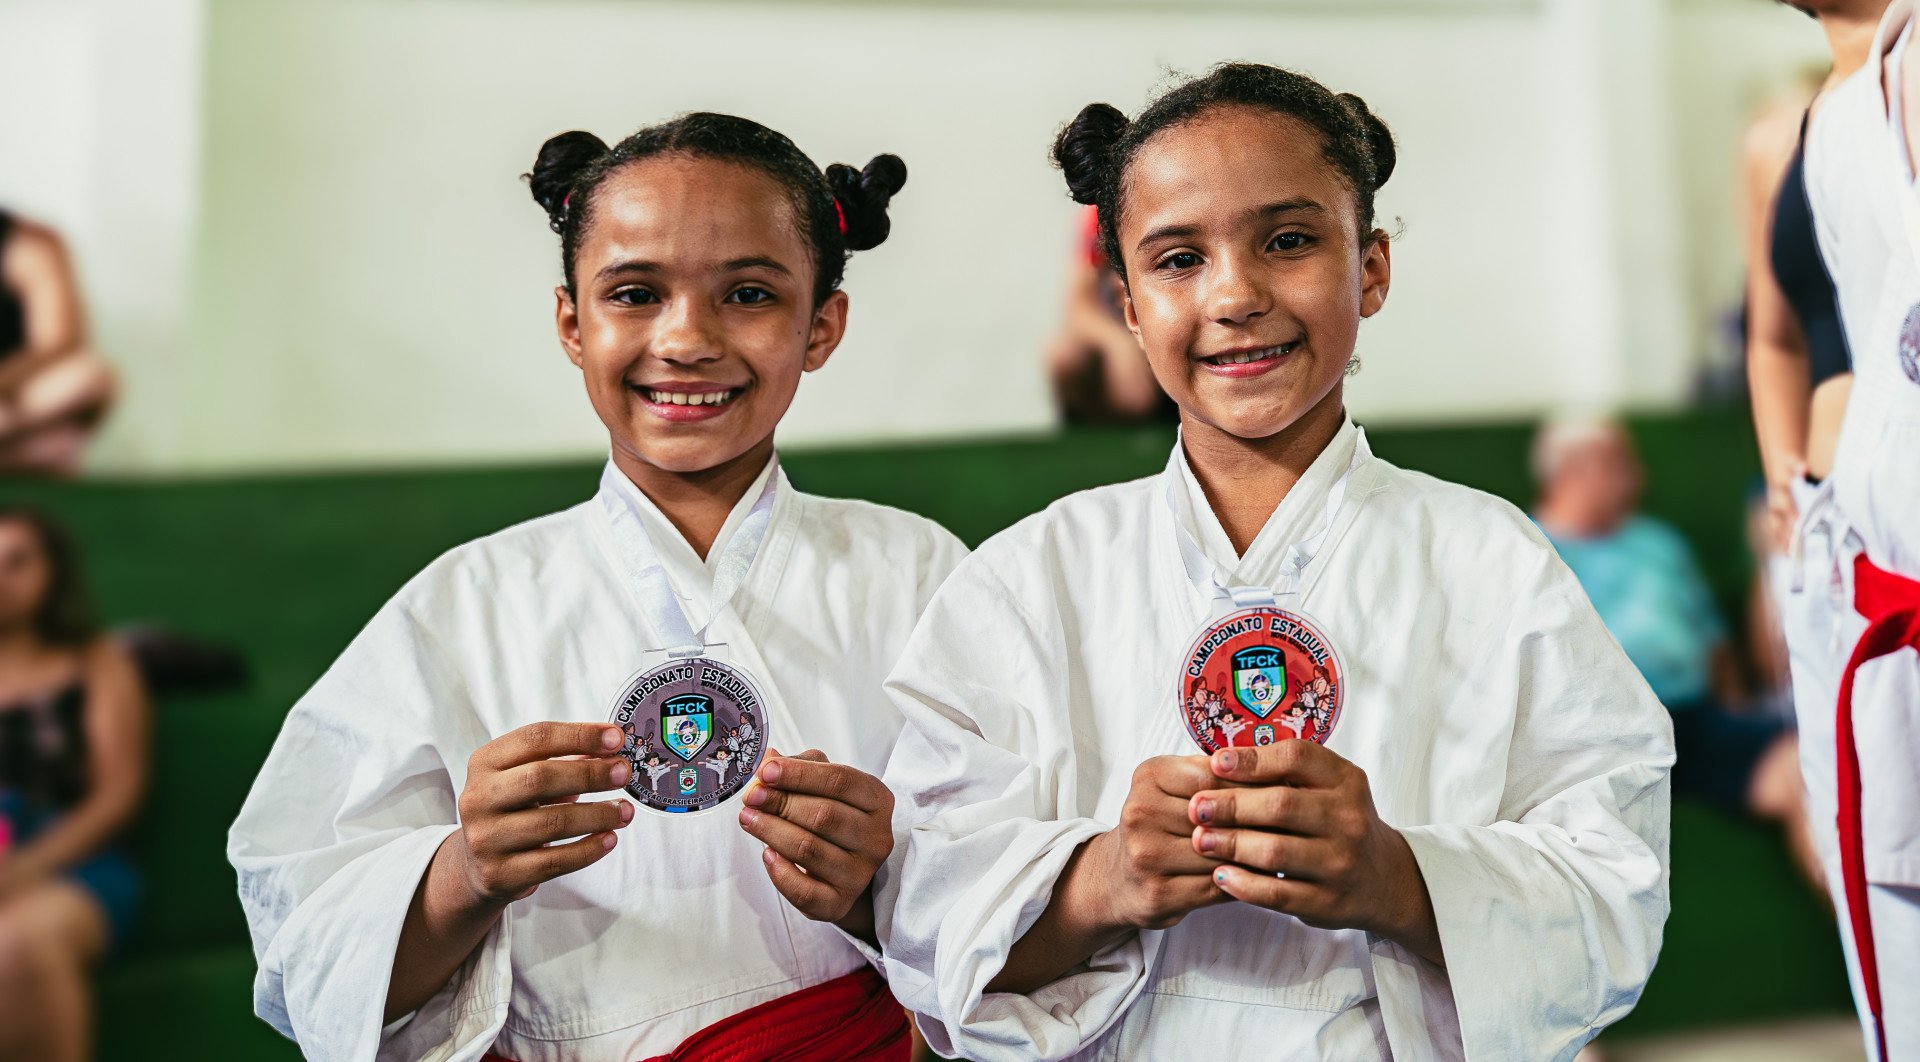 As filhas gêmeas, Laura e Maitê, de 7 anos, seguem os passos do pai e já conseguiram suas próprias medalhas - Mateus Carvalho / PMN